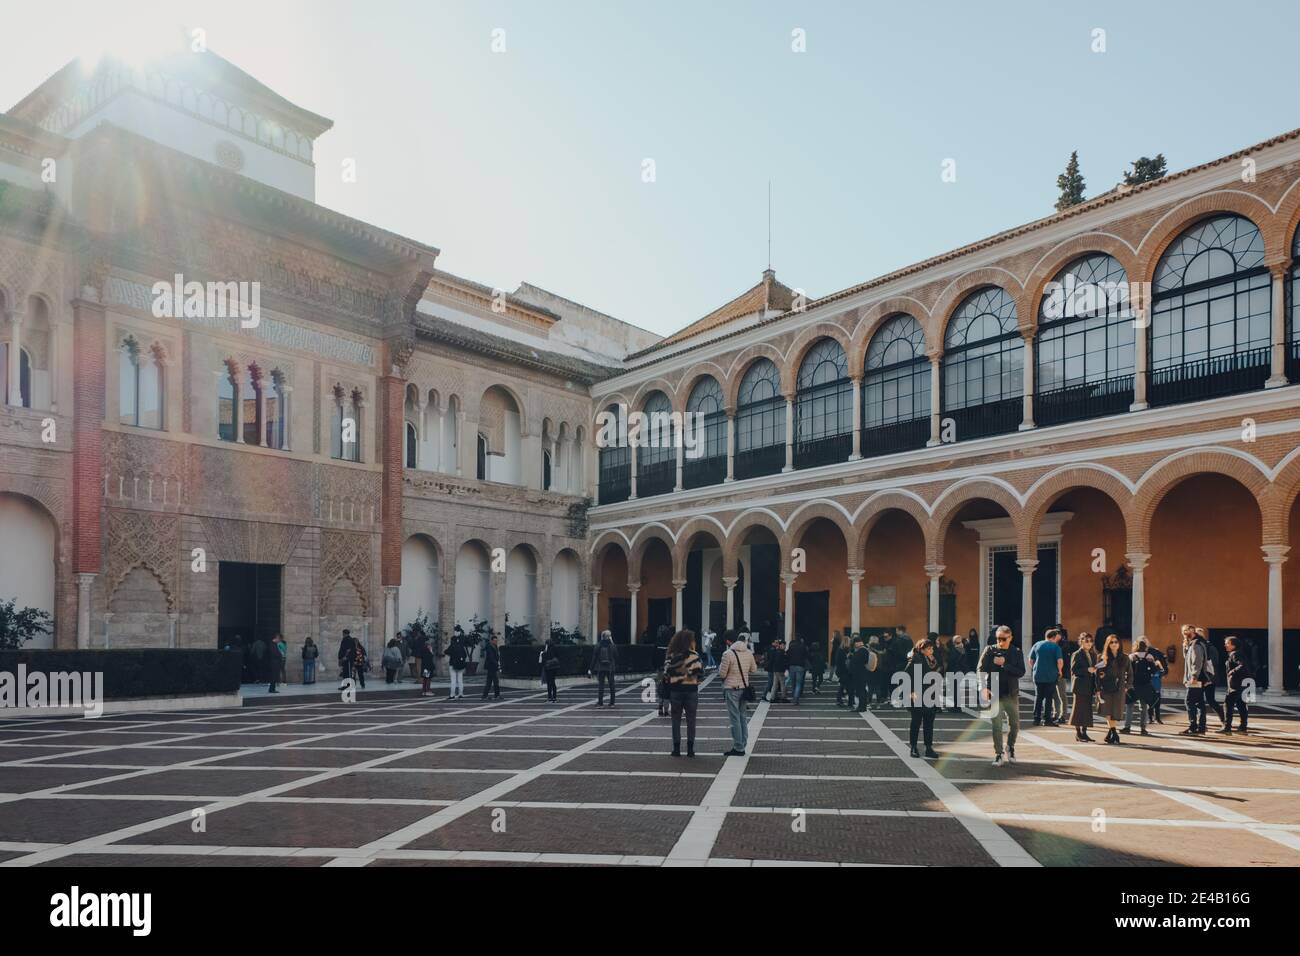 Siviglia, Spagna - 19 gennaio 2020: Persone che camminano sul patio de la Monteria in Alcazar di Siviglia, un palazzo reale costruito per il re cristiano Pietro Foto Stock